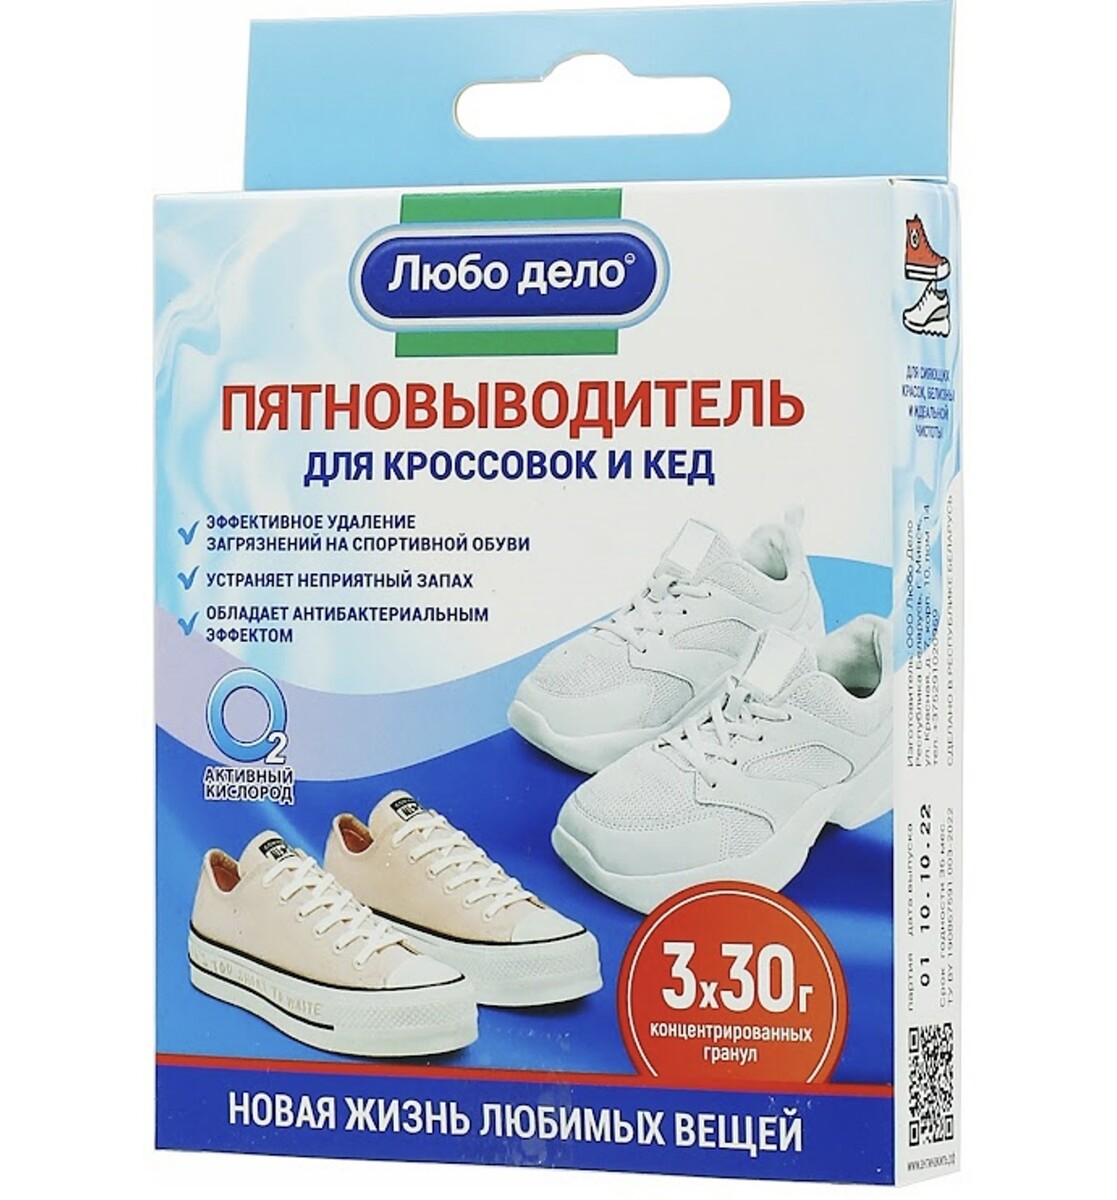 Пятновыводитель - очиститель для кроссовок и кед, 3 саше- пакета по 30г пятновыводитель pulcino для детской